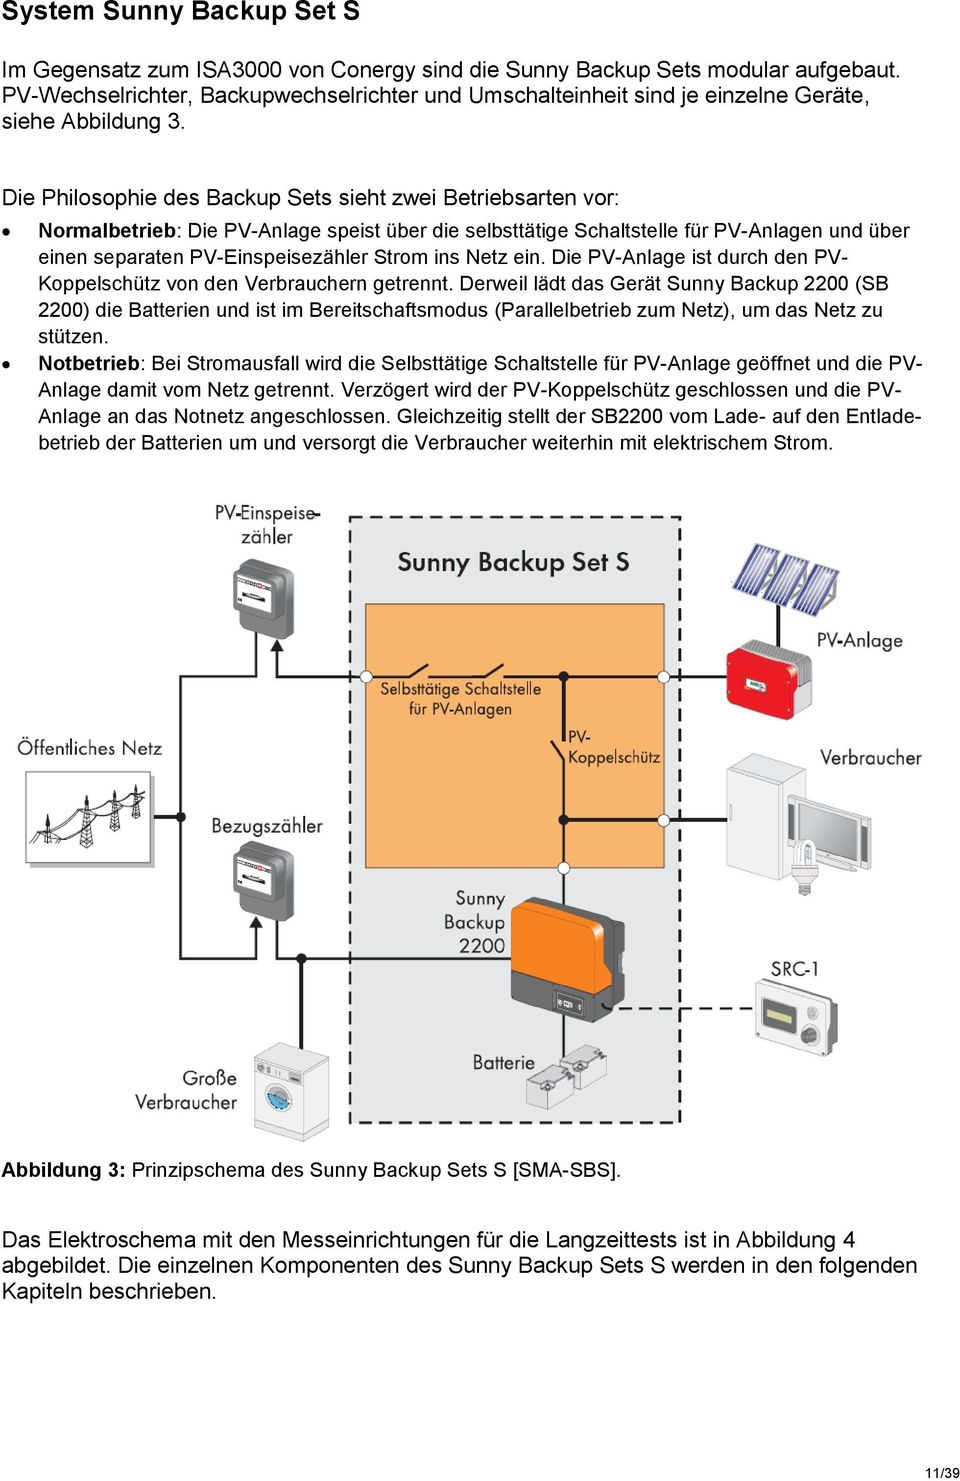 Die Philosophie des Backup Sets sieht zwei Betriebsarten vor: Normalbetrieb: Die PV-Anlage speist über die selbsttätige Schaltstelle für PV-Anlagen und über einen separaten PV-Einspeisezähler Strom